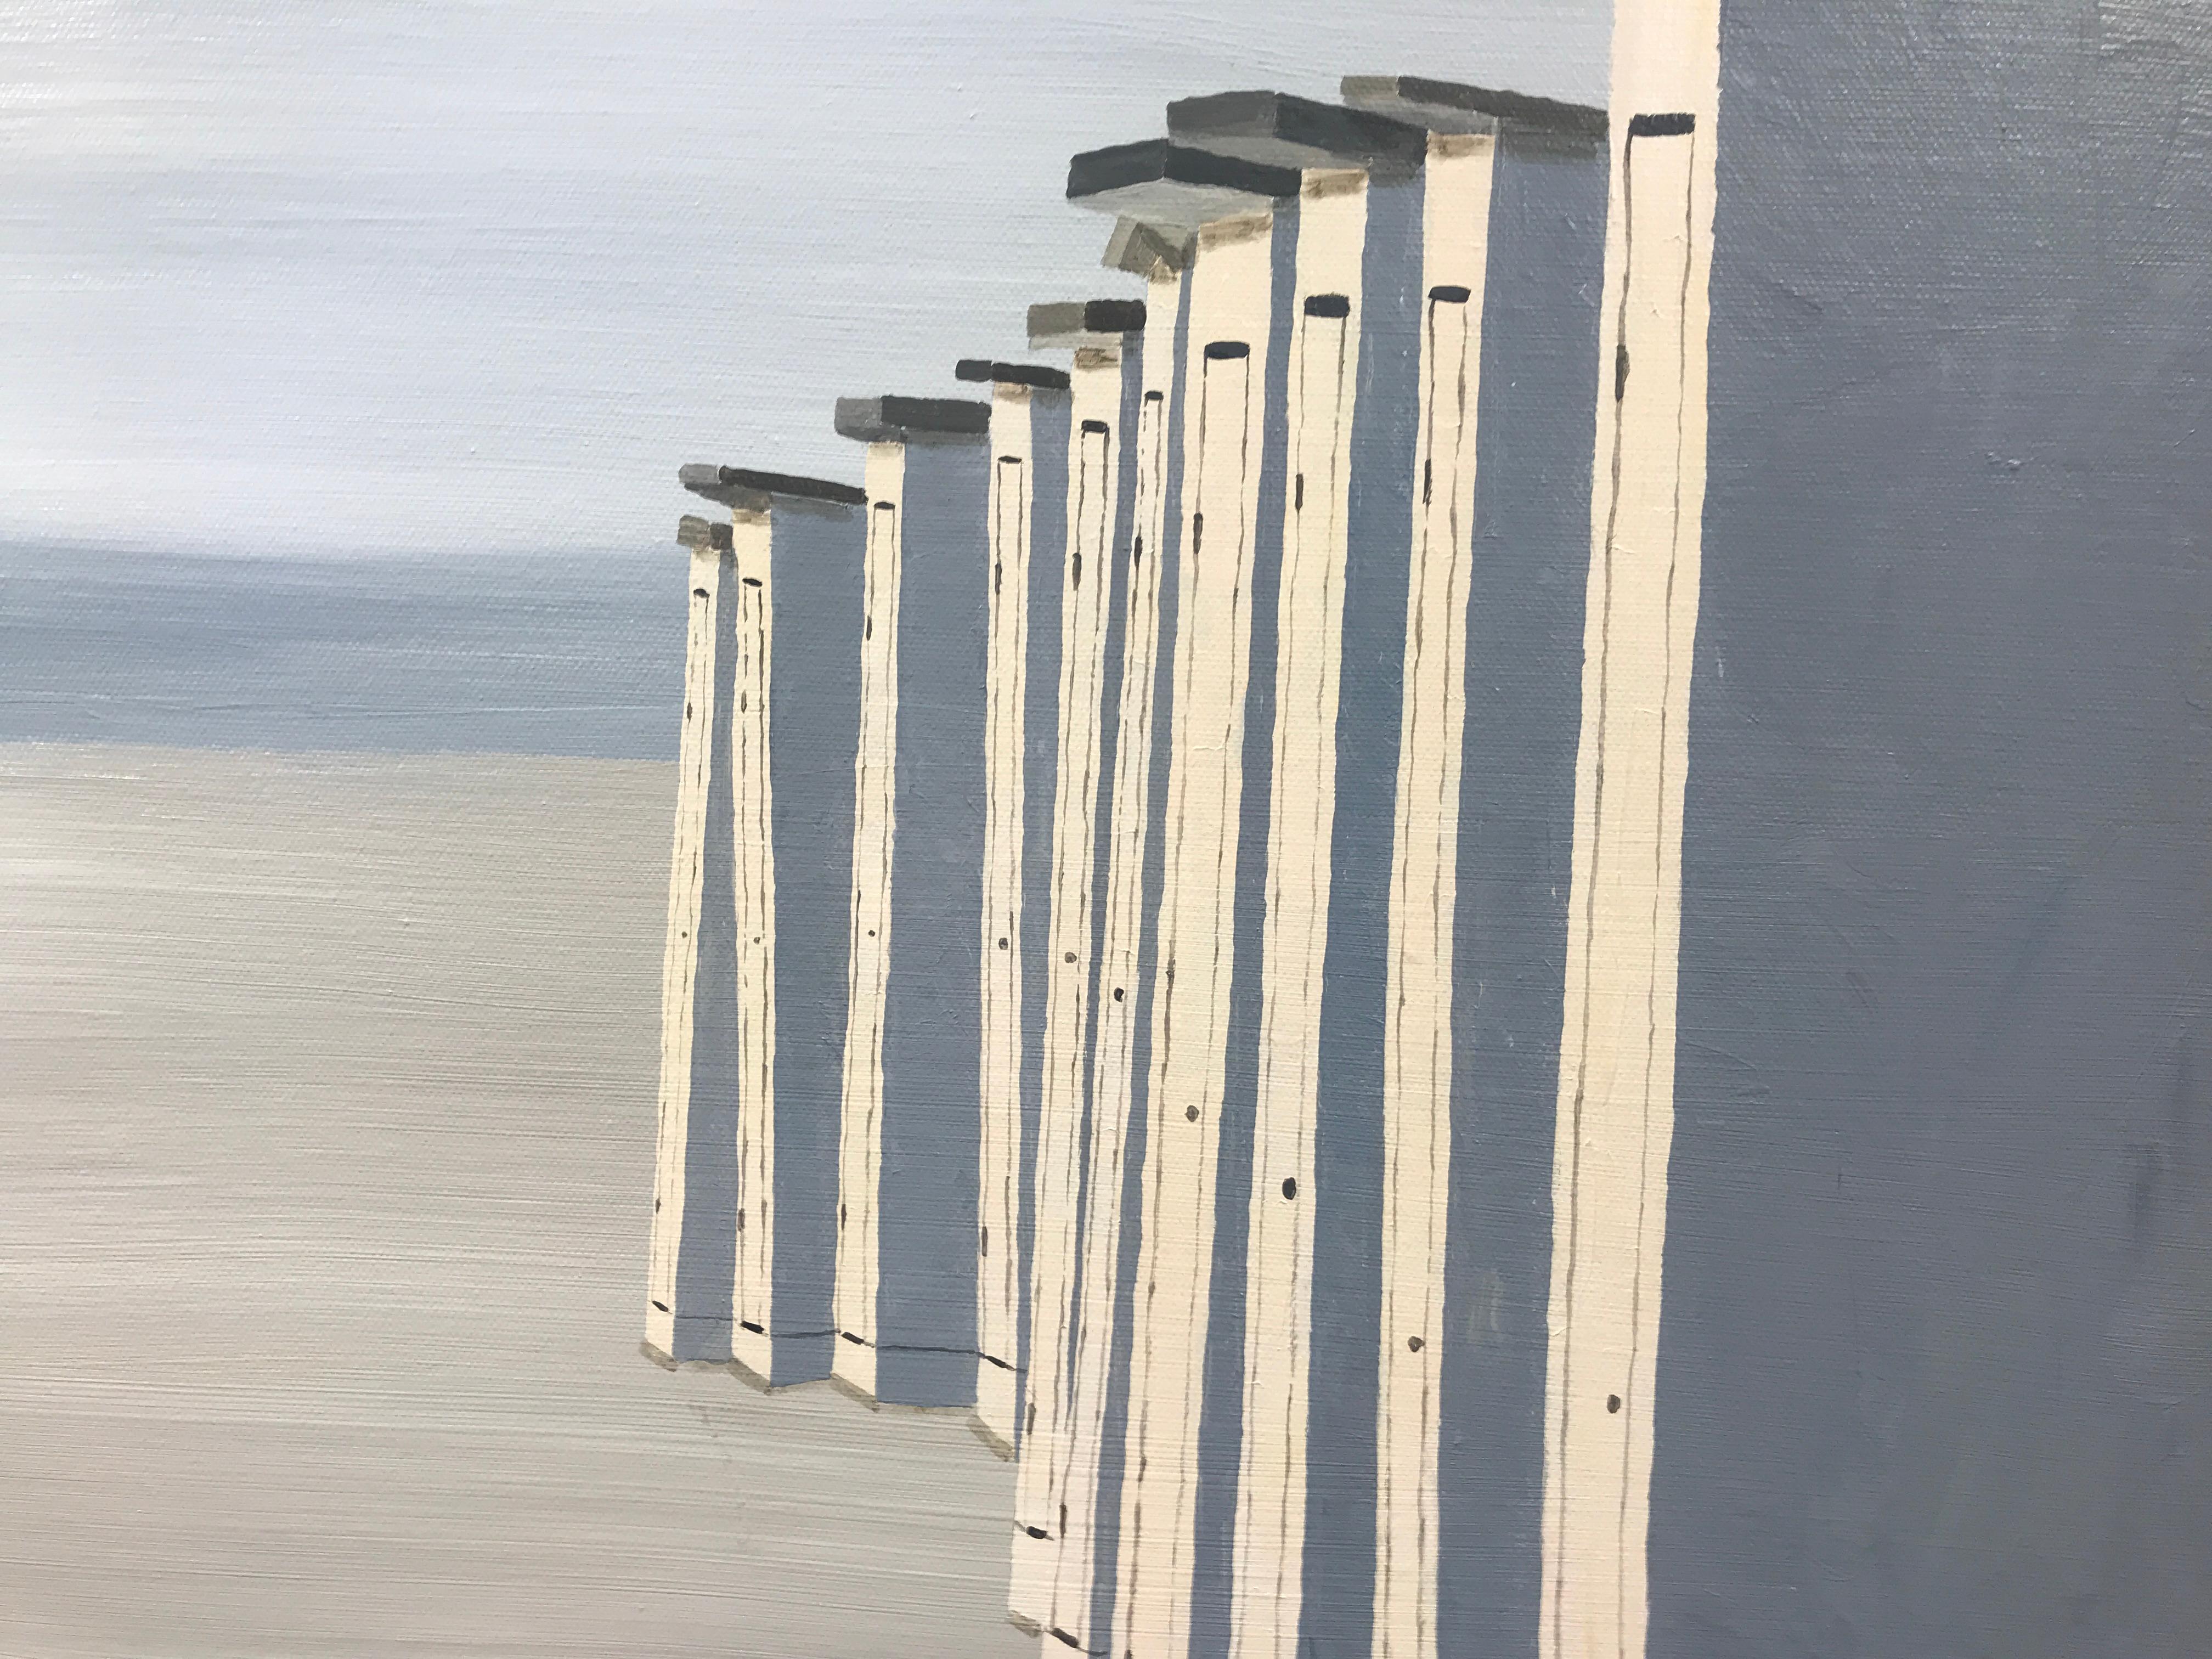 Le Coucher du Soleil, Susan Kinsella 2018 Realist Oil on Canvas Beach Painting 4